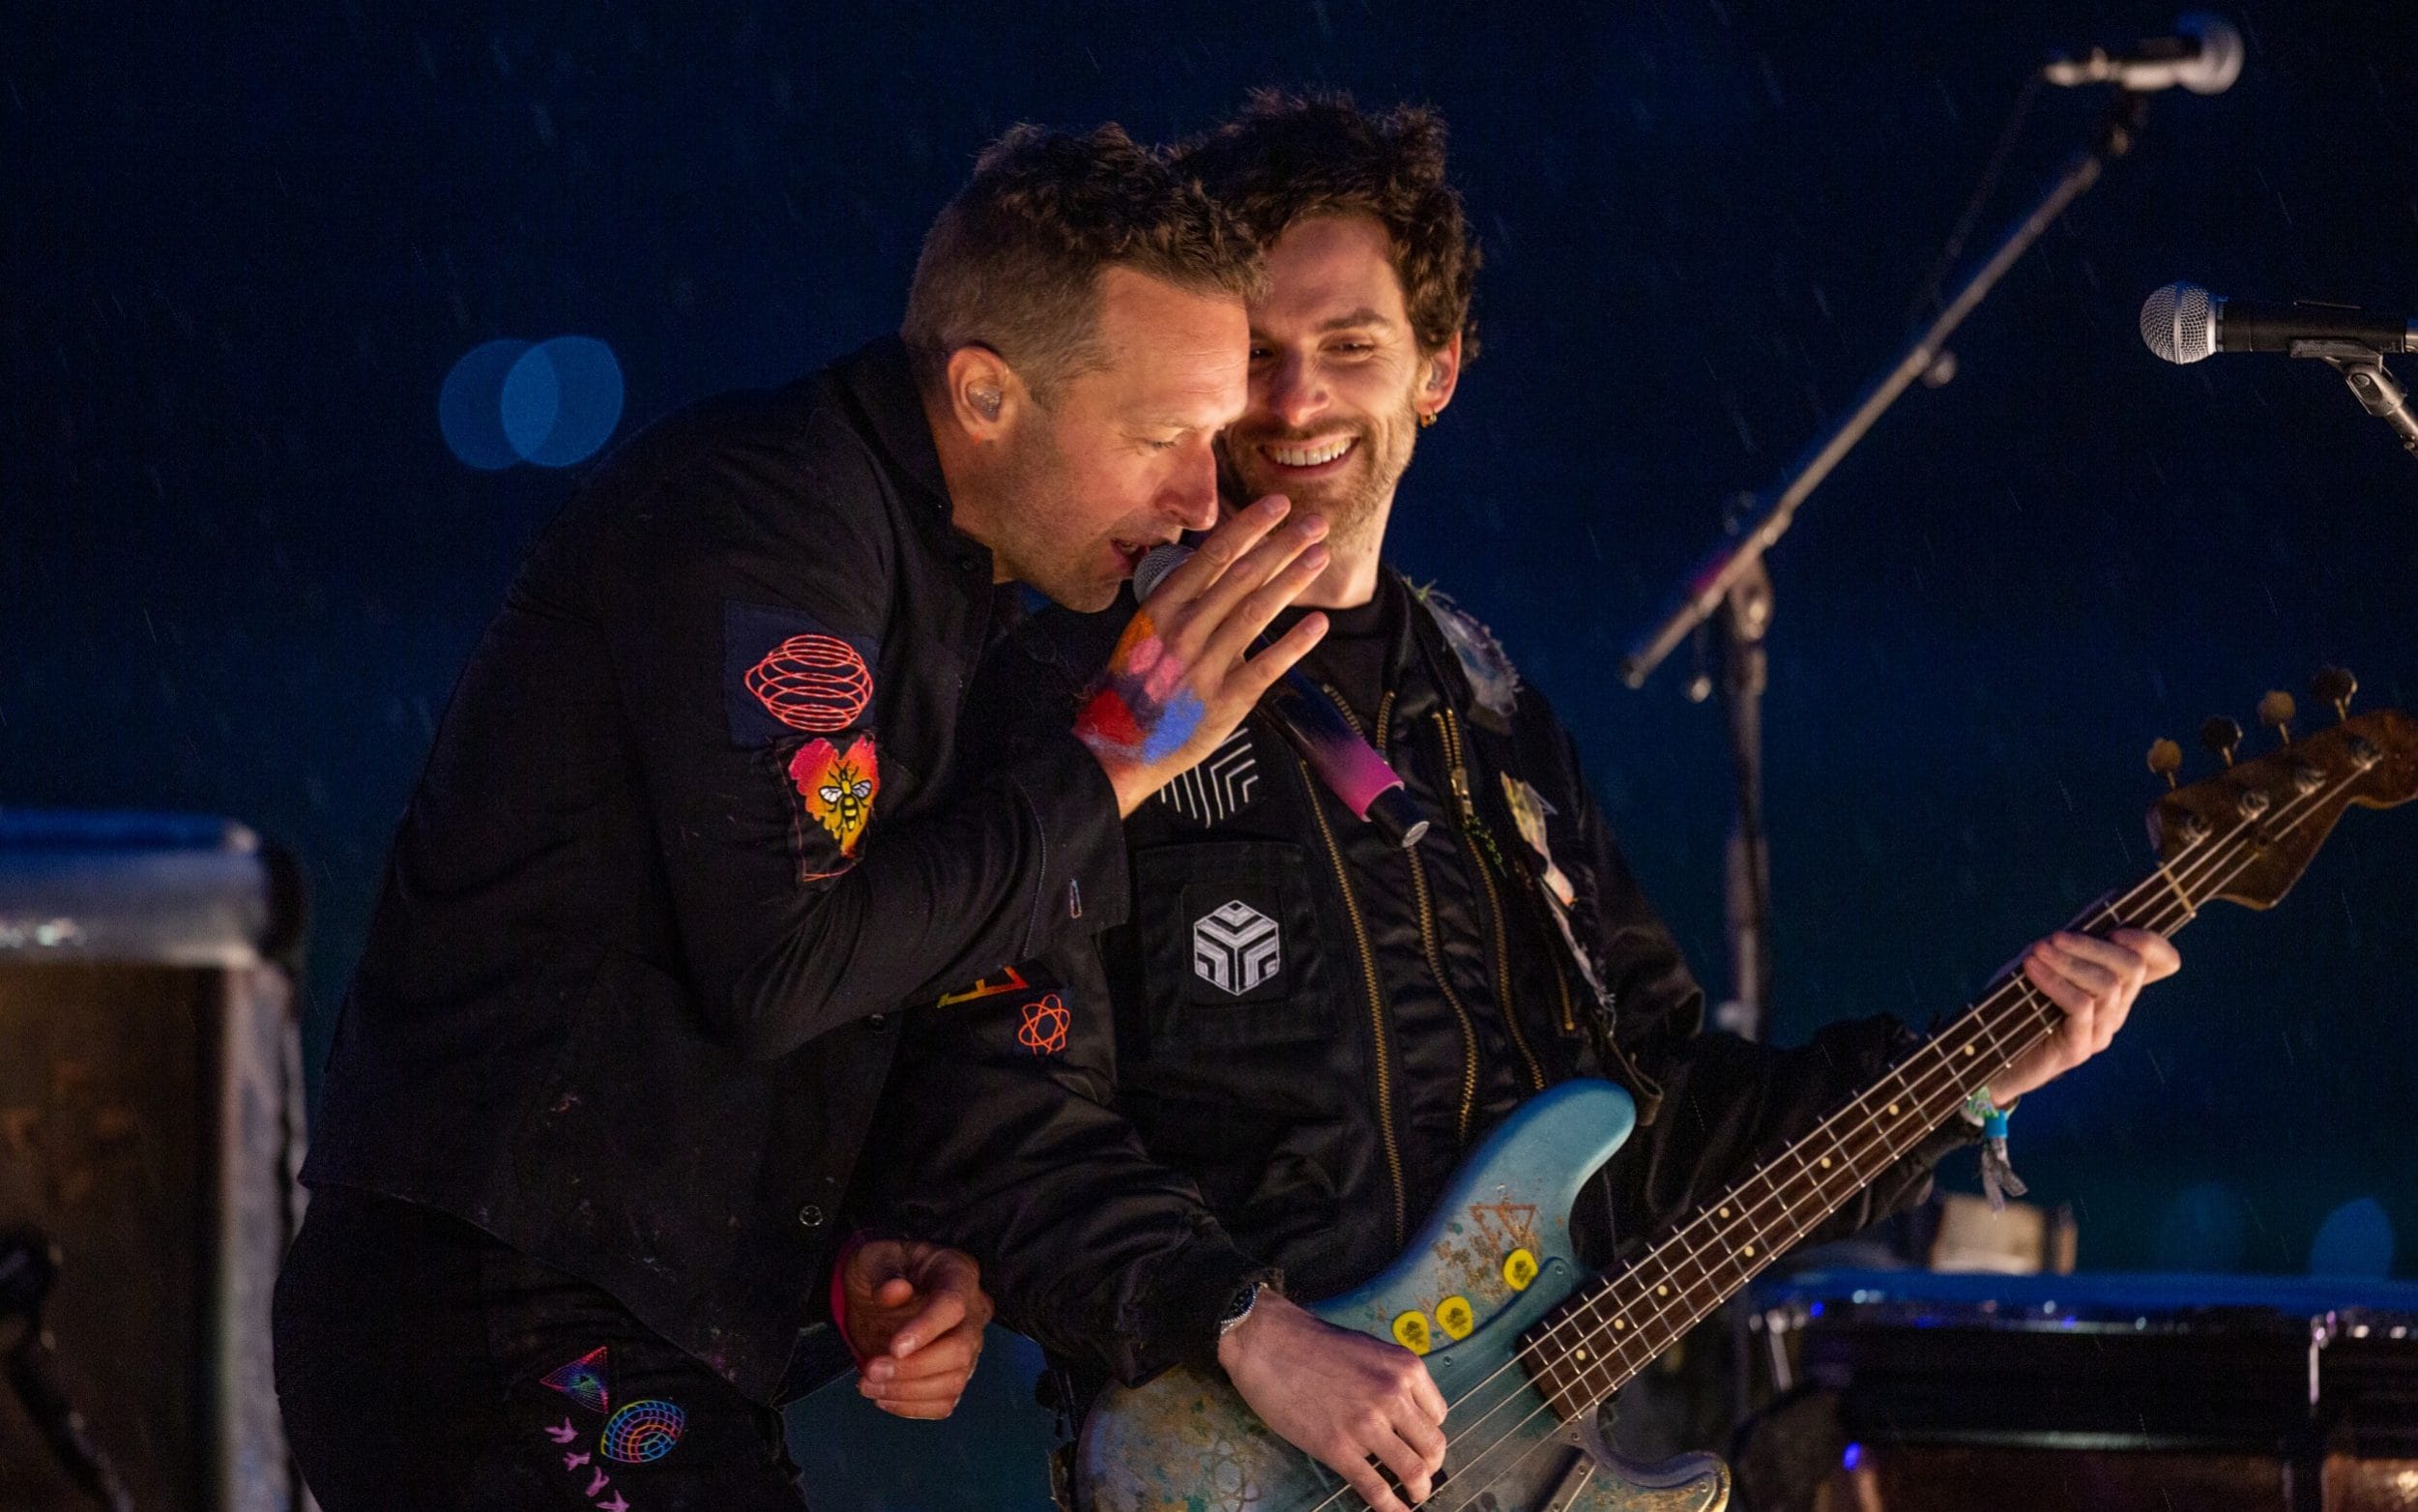 Coldplay克里斯馬汀在酒吧現場即興表演coldplay經典歌曲